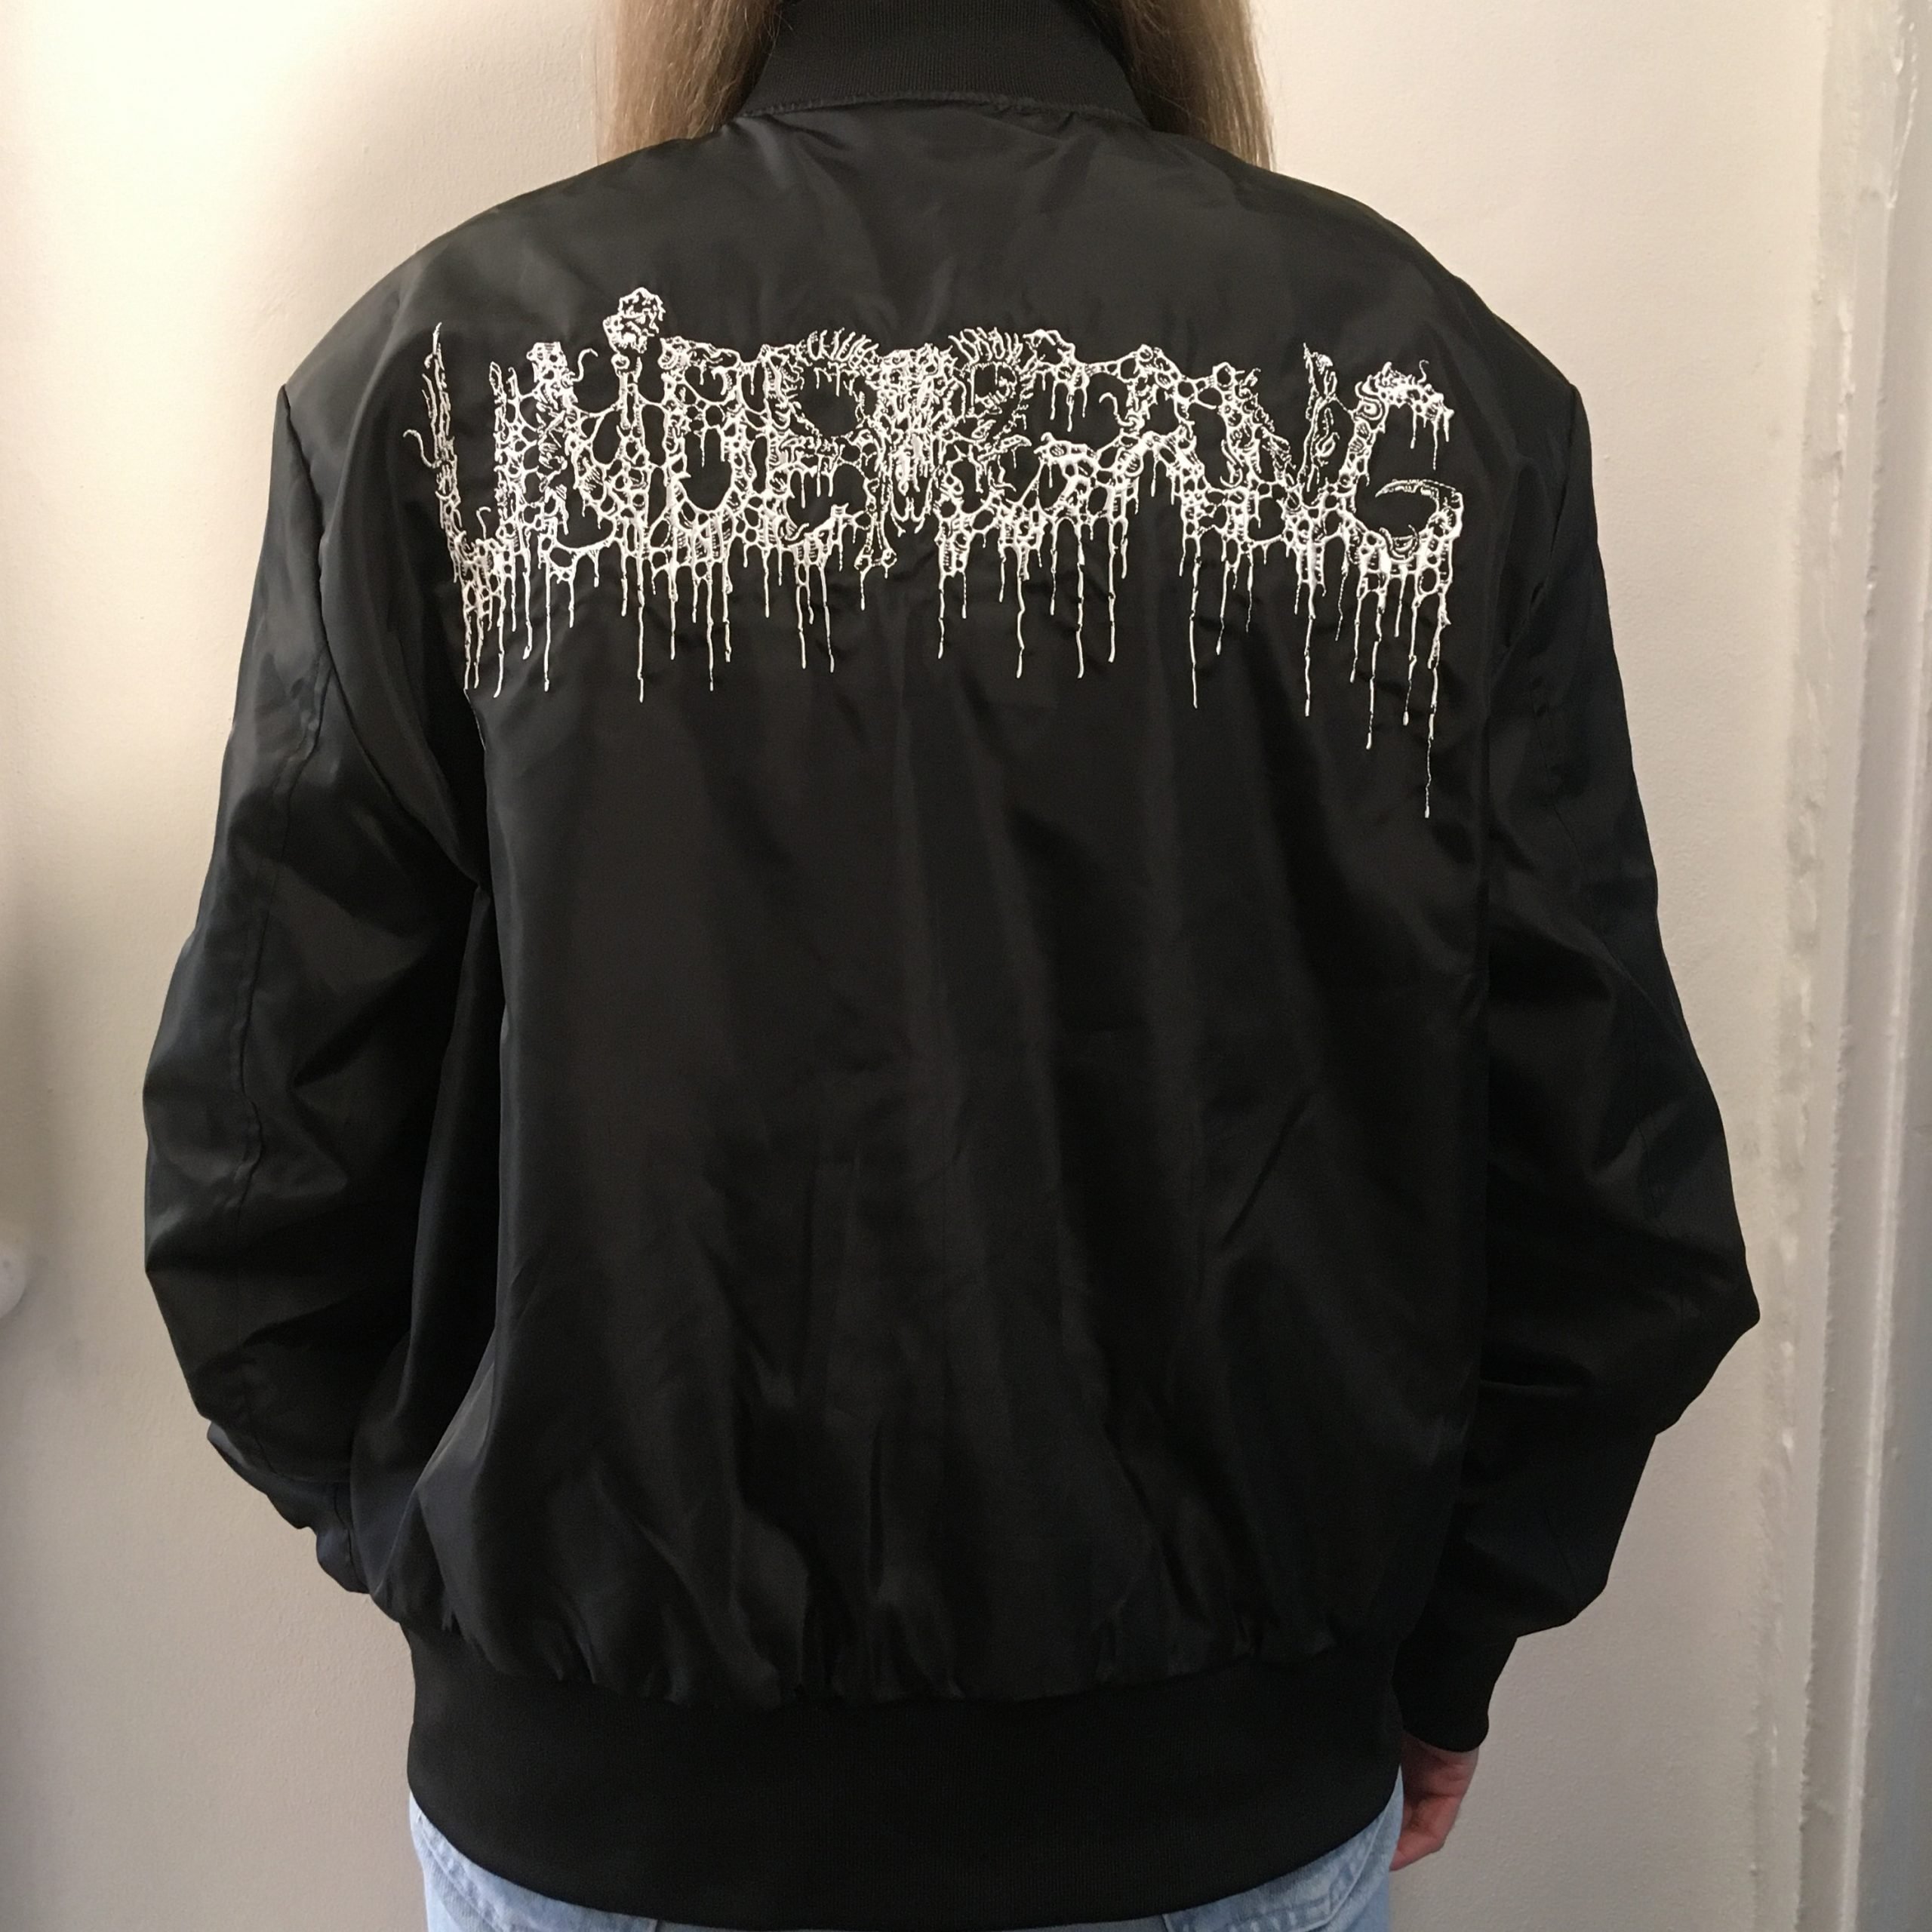 Photo of the Undergang - Bomber jacket